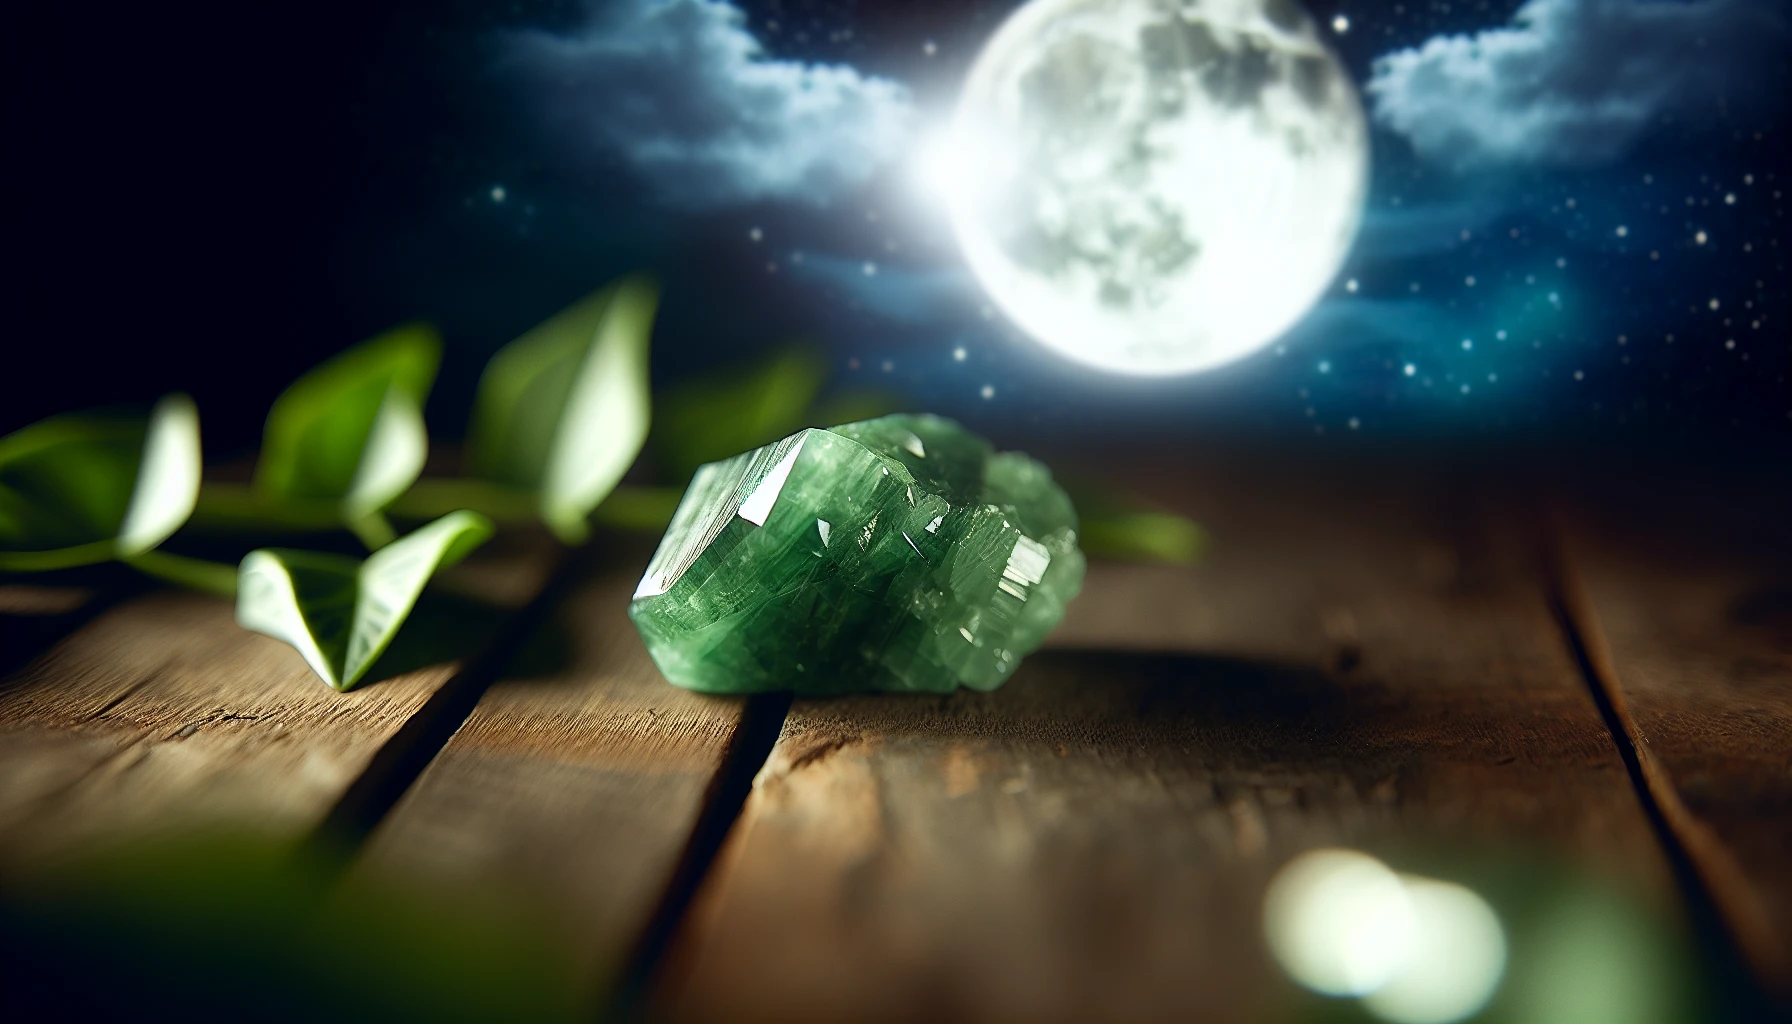 Green aventurine crystal in moonlight